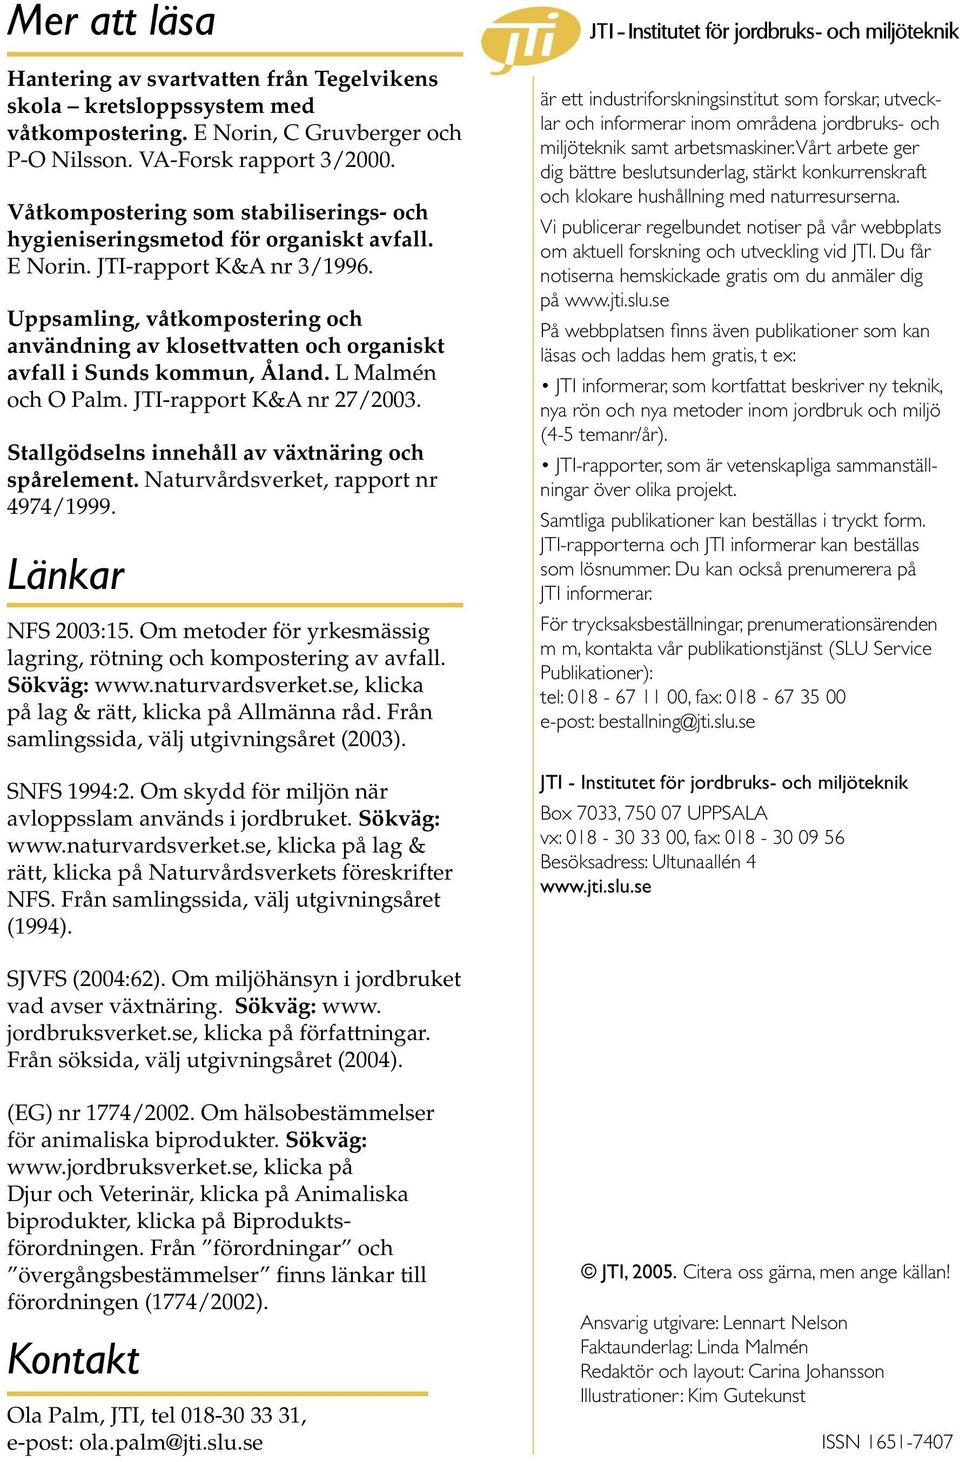 Uppsamling, våtkompostering och användning av klosettvatten och organiskt avfall i Sunds kommun, Åland. L Malmén och O Palm. JTI-rapport K&A nr 27/2003.